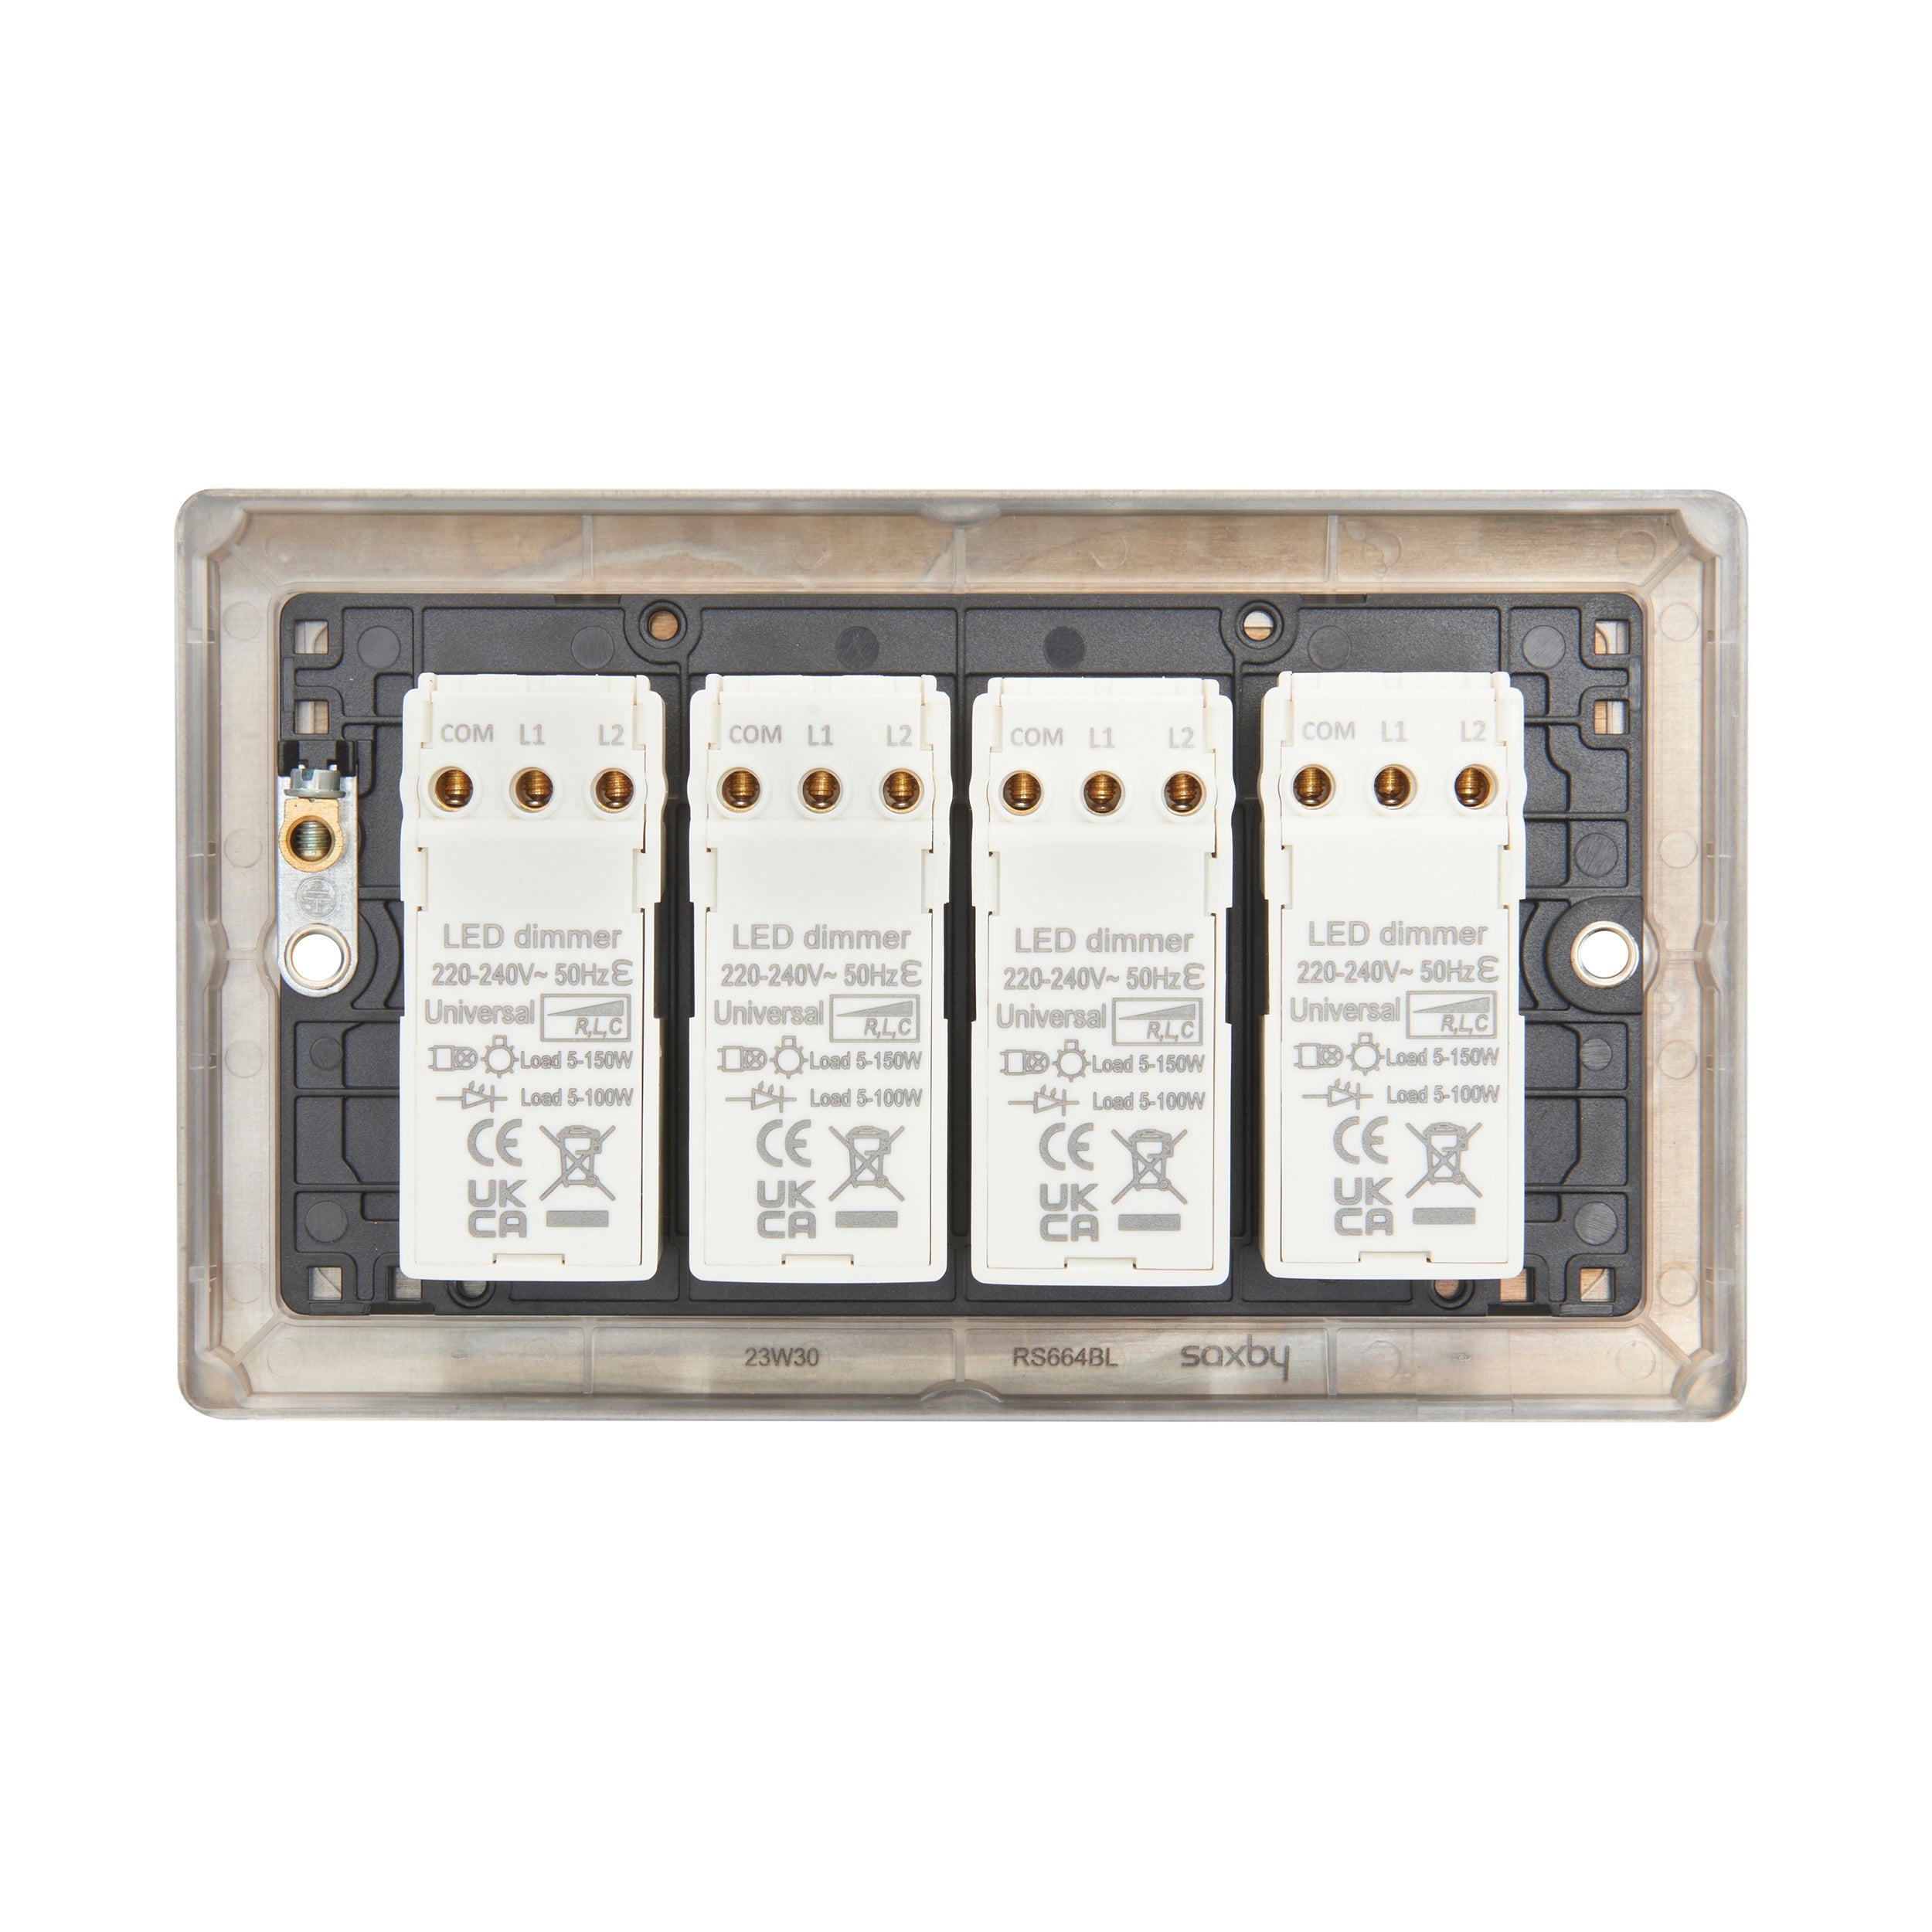 Saxby Raised Screwed 4G LED Dimmer 5-100W - Matt Black RS664BL